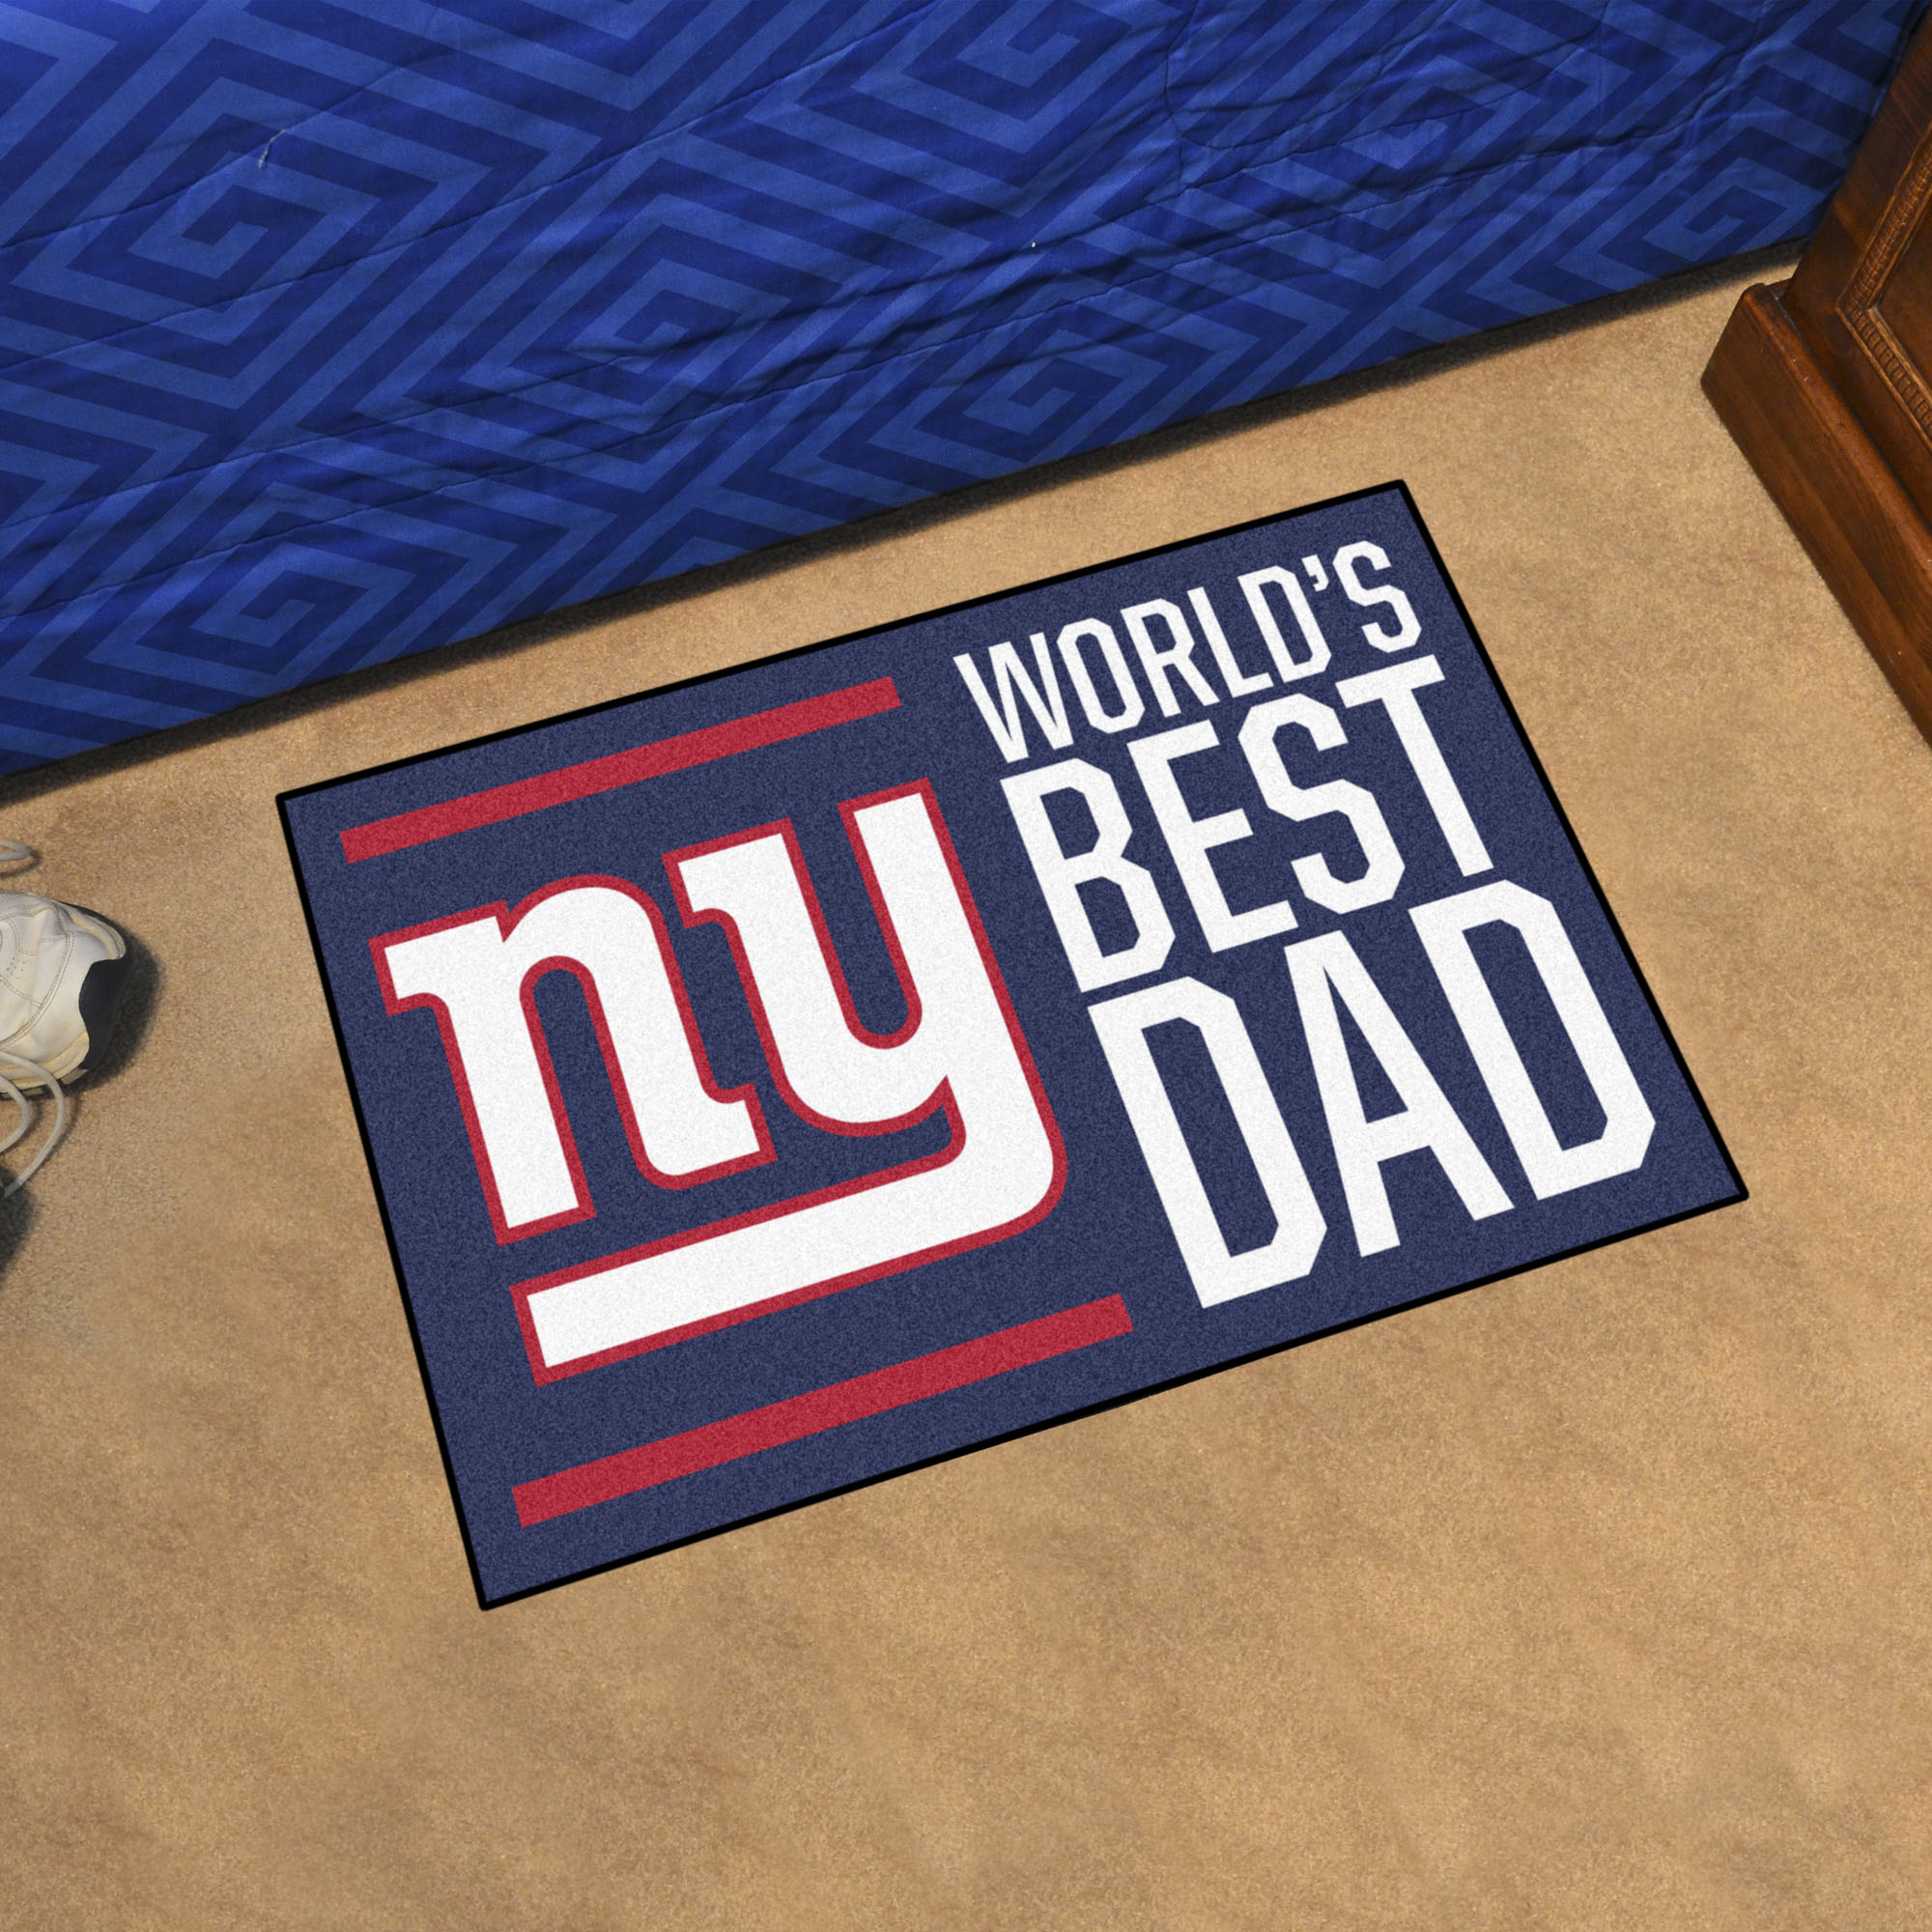 New York Giants Worldâ€™s Best Dad Starter Doormat - 19 x 30